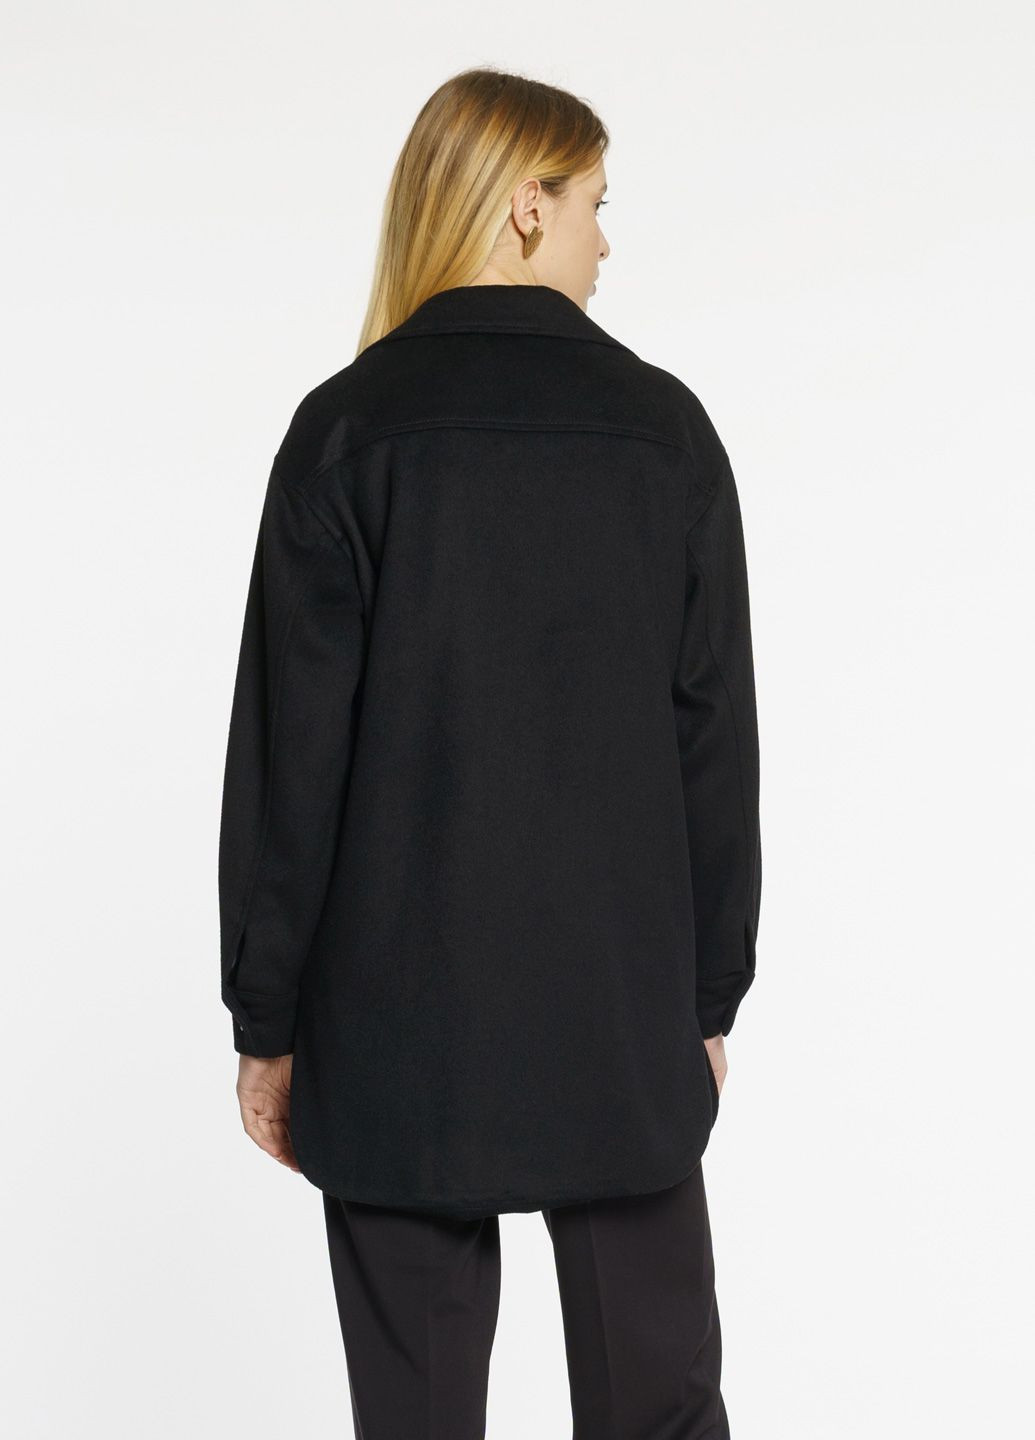 Черная демисезонная куртка женская черная Arber Overshirt wool W